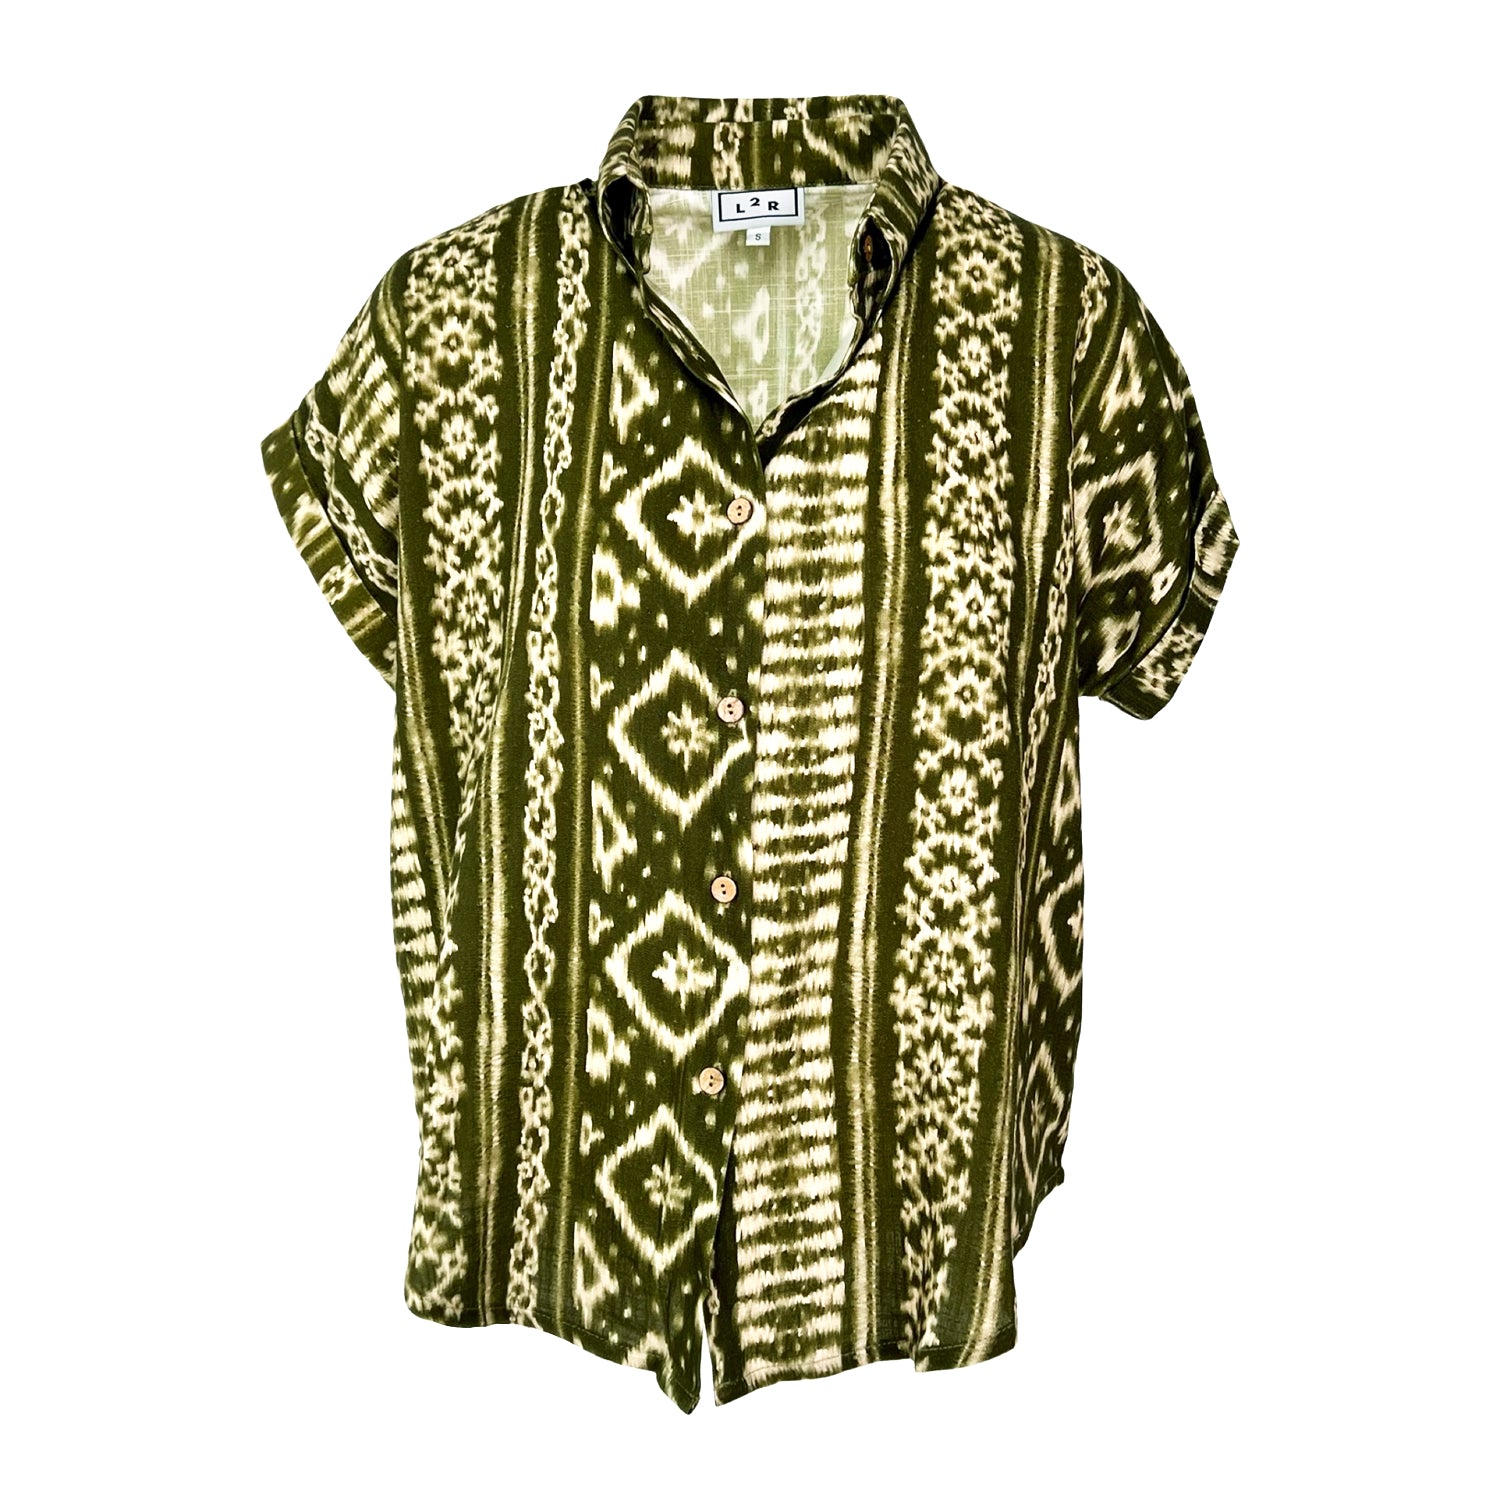 L2r The Label Women's Short-sleeved Linen Shirt - Essaouira Green